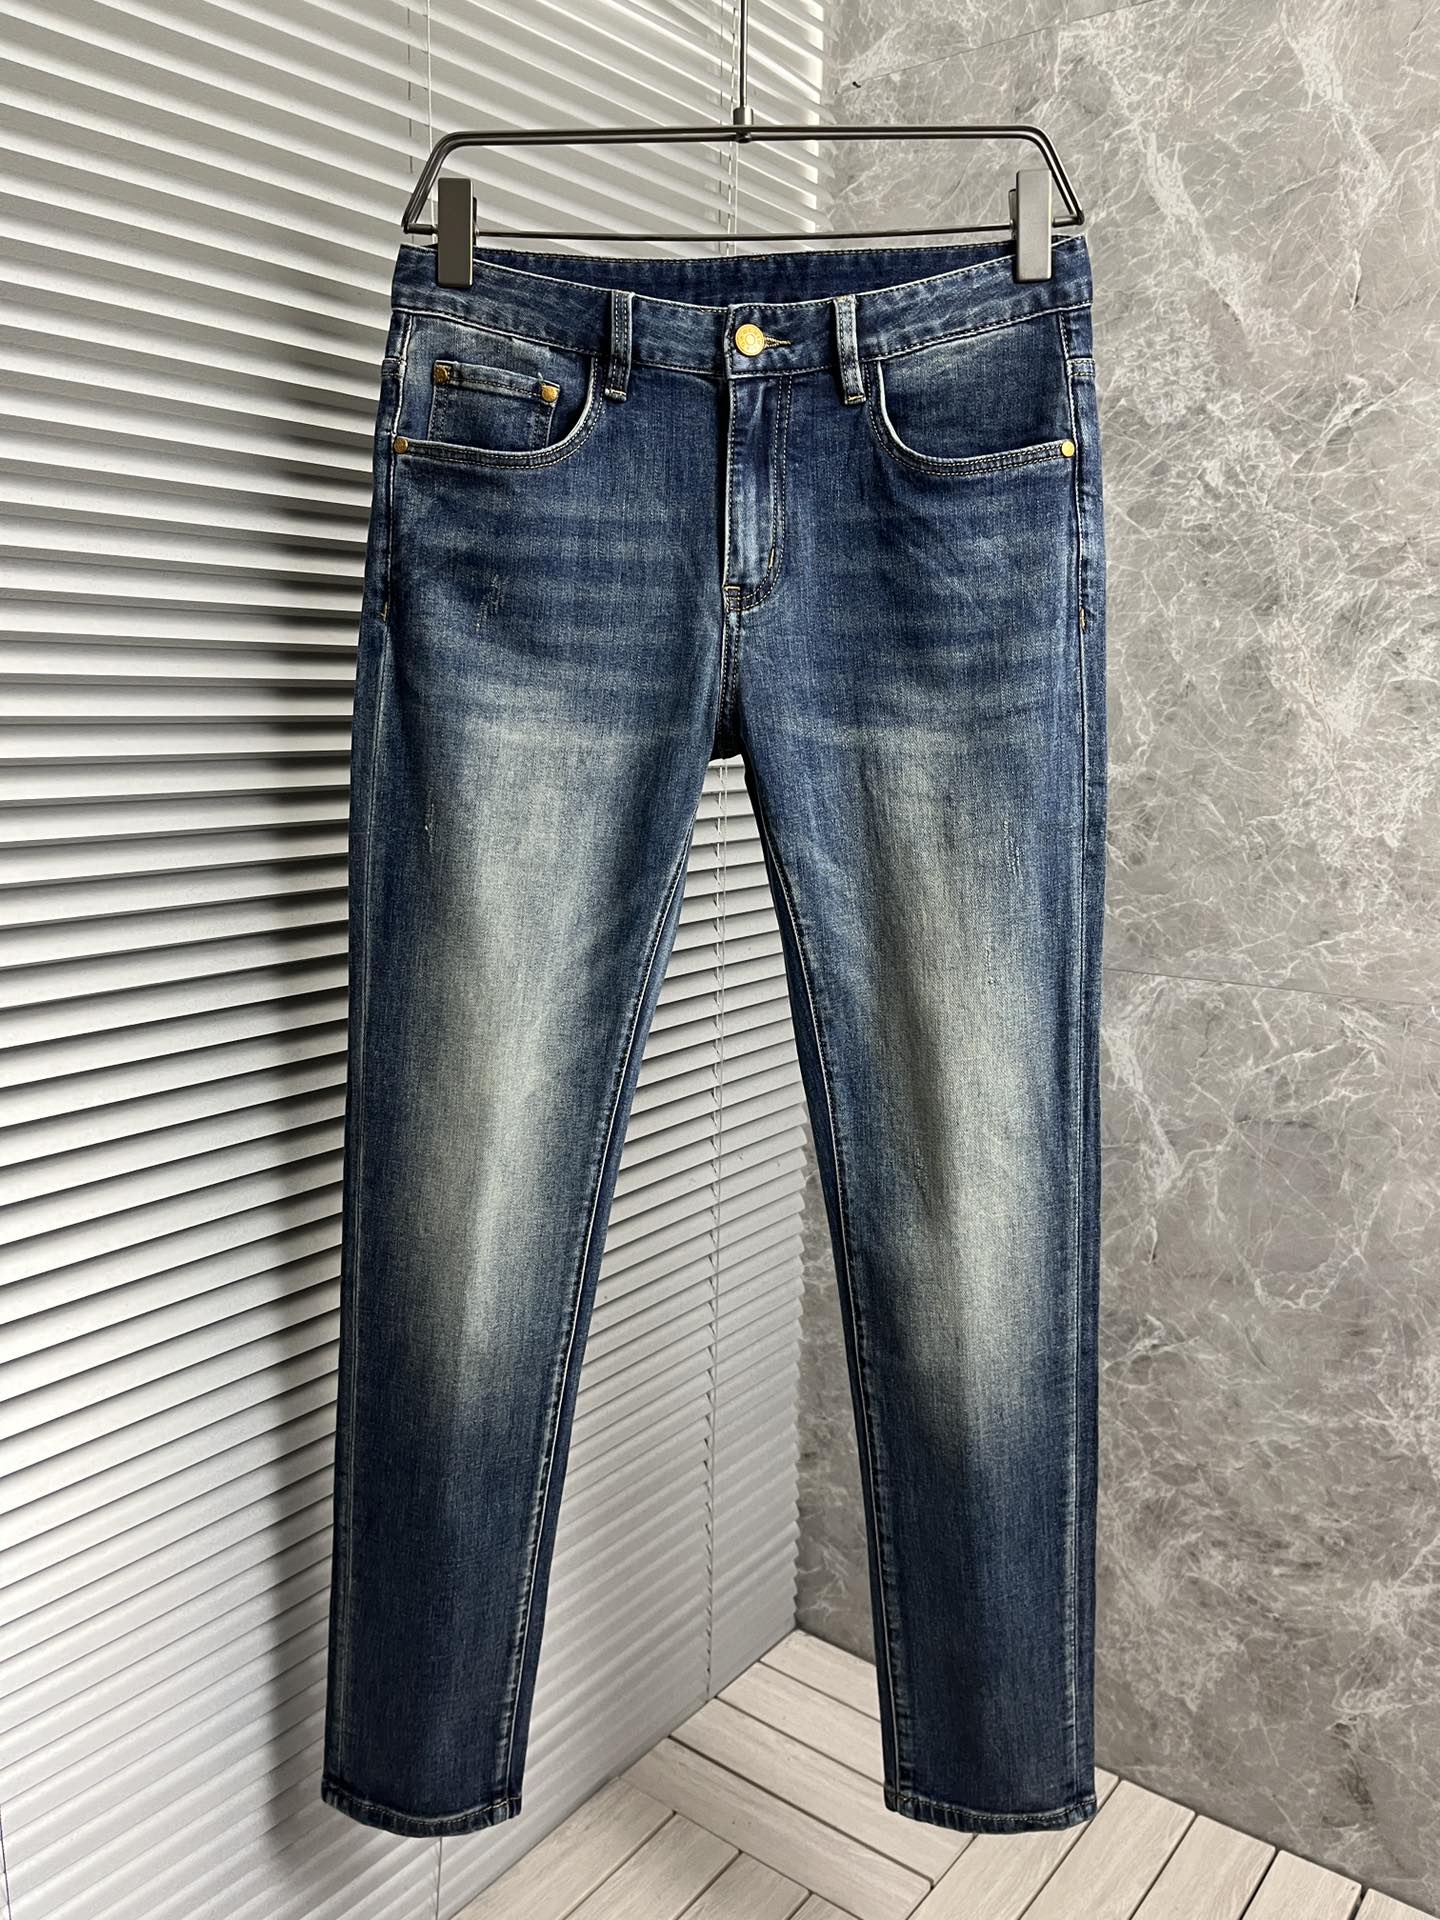 【 LV】簡約時尚牛仔褲